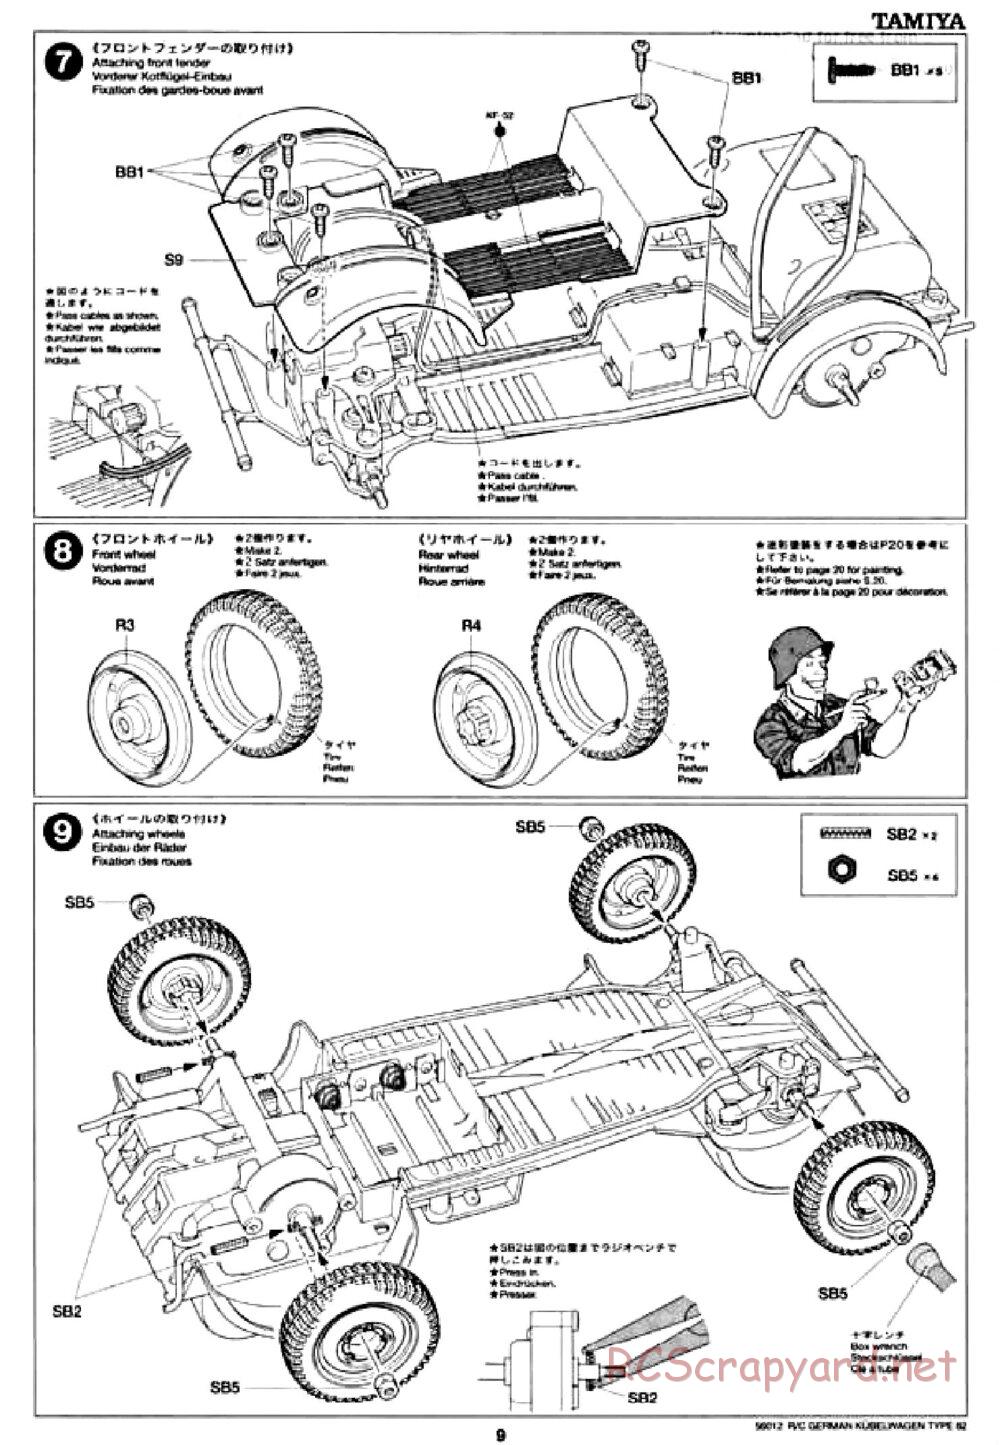 Tamiya - Kubelwagen Type 82 Chassis - Manual - Page 9